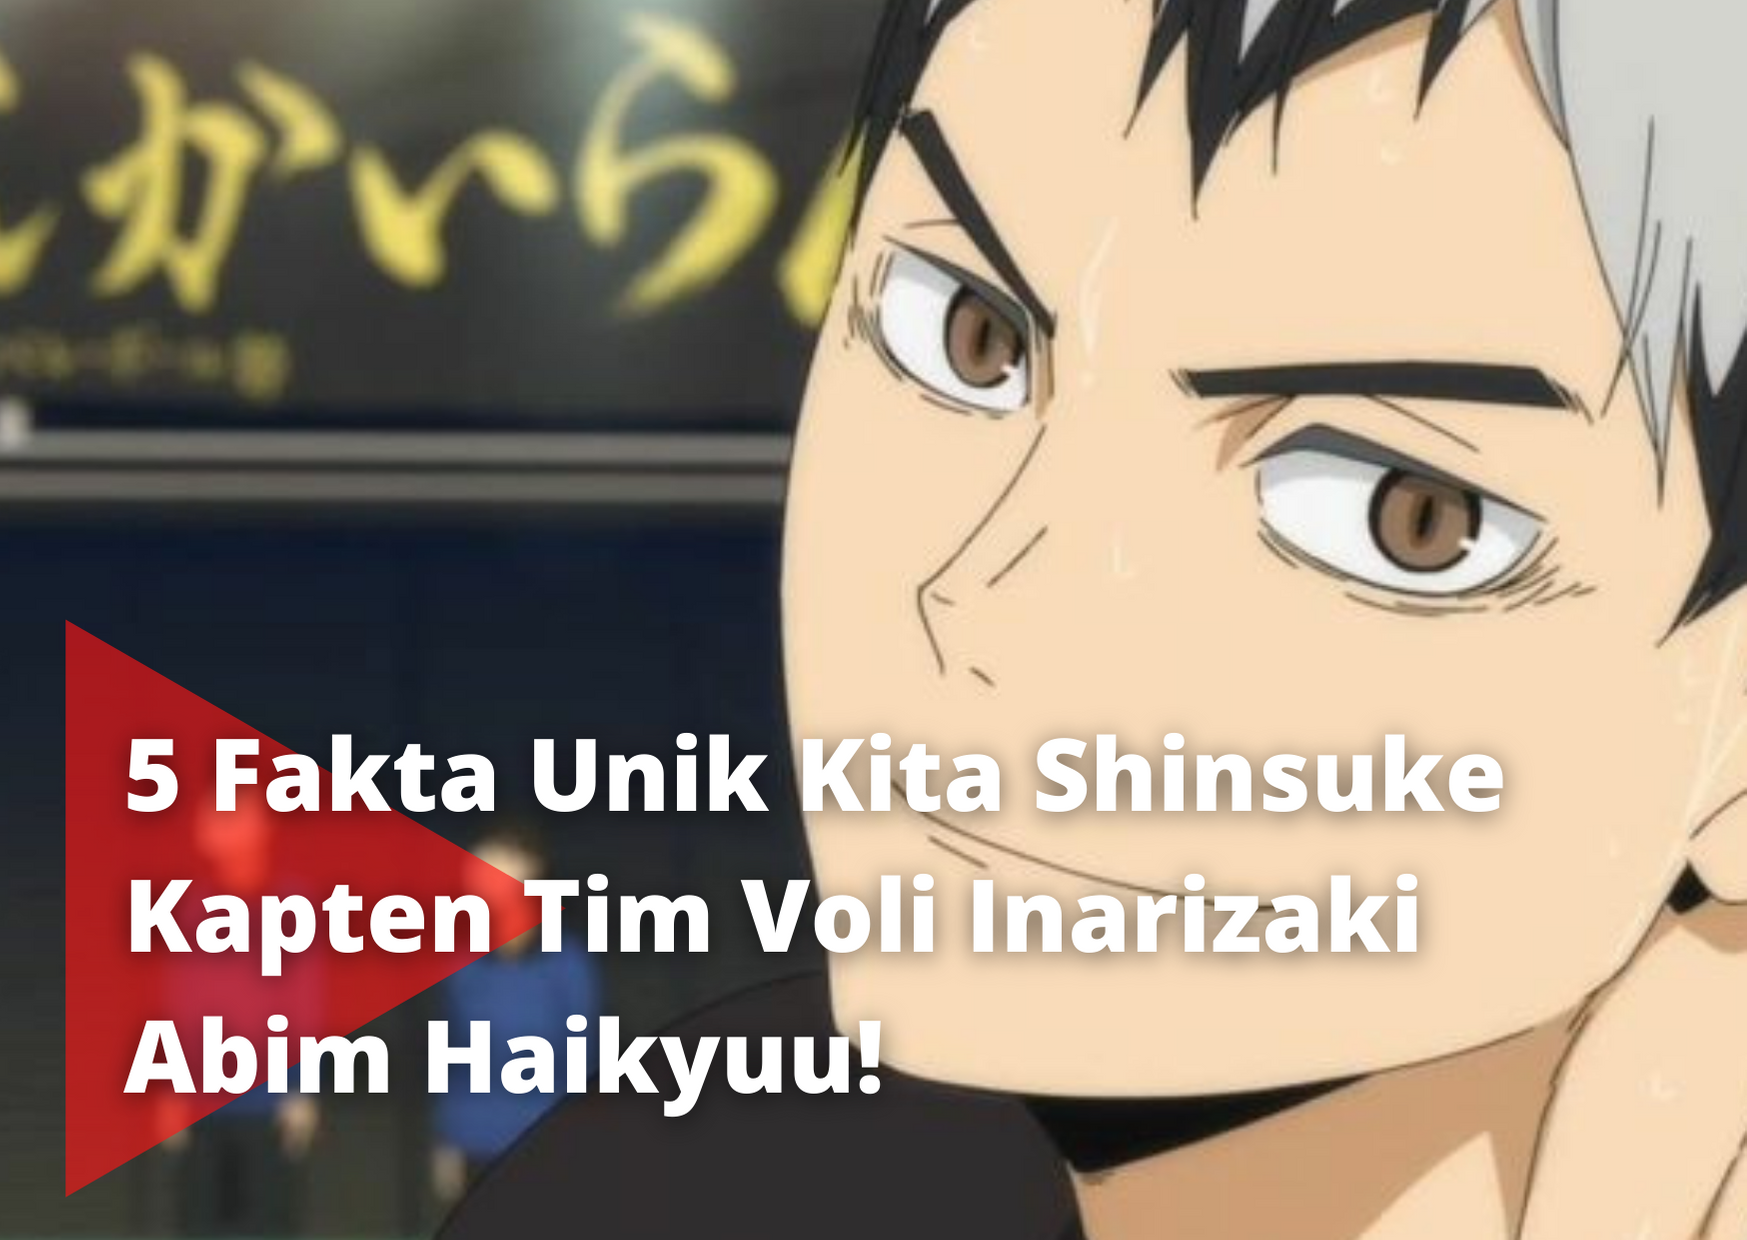 5 Fakta Unik Kita Shinsuke Kapten Tim Voli Inarizaki Anime Haikyuu!